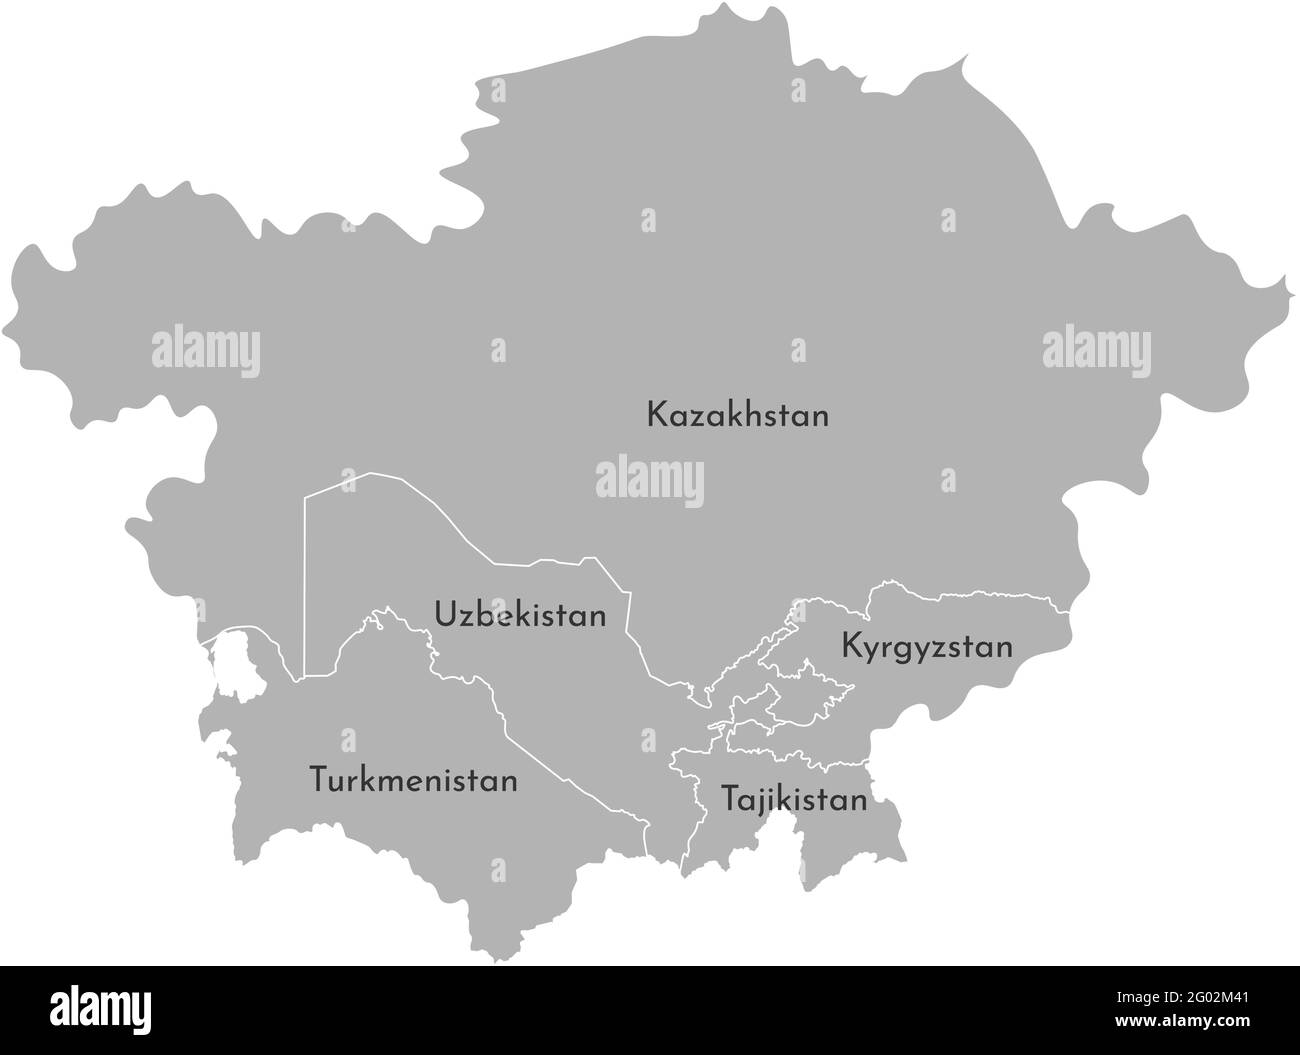 Vektorgrafik Karte der asiatischen Länder. Grenzen der Staaten. Graue Silhouette. Weißer Hintergrund Stock Vektor